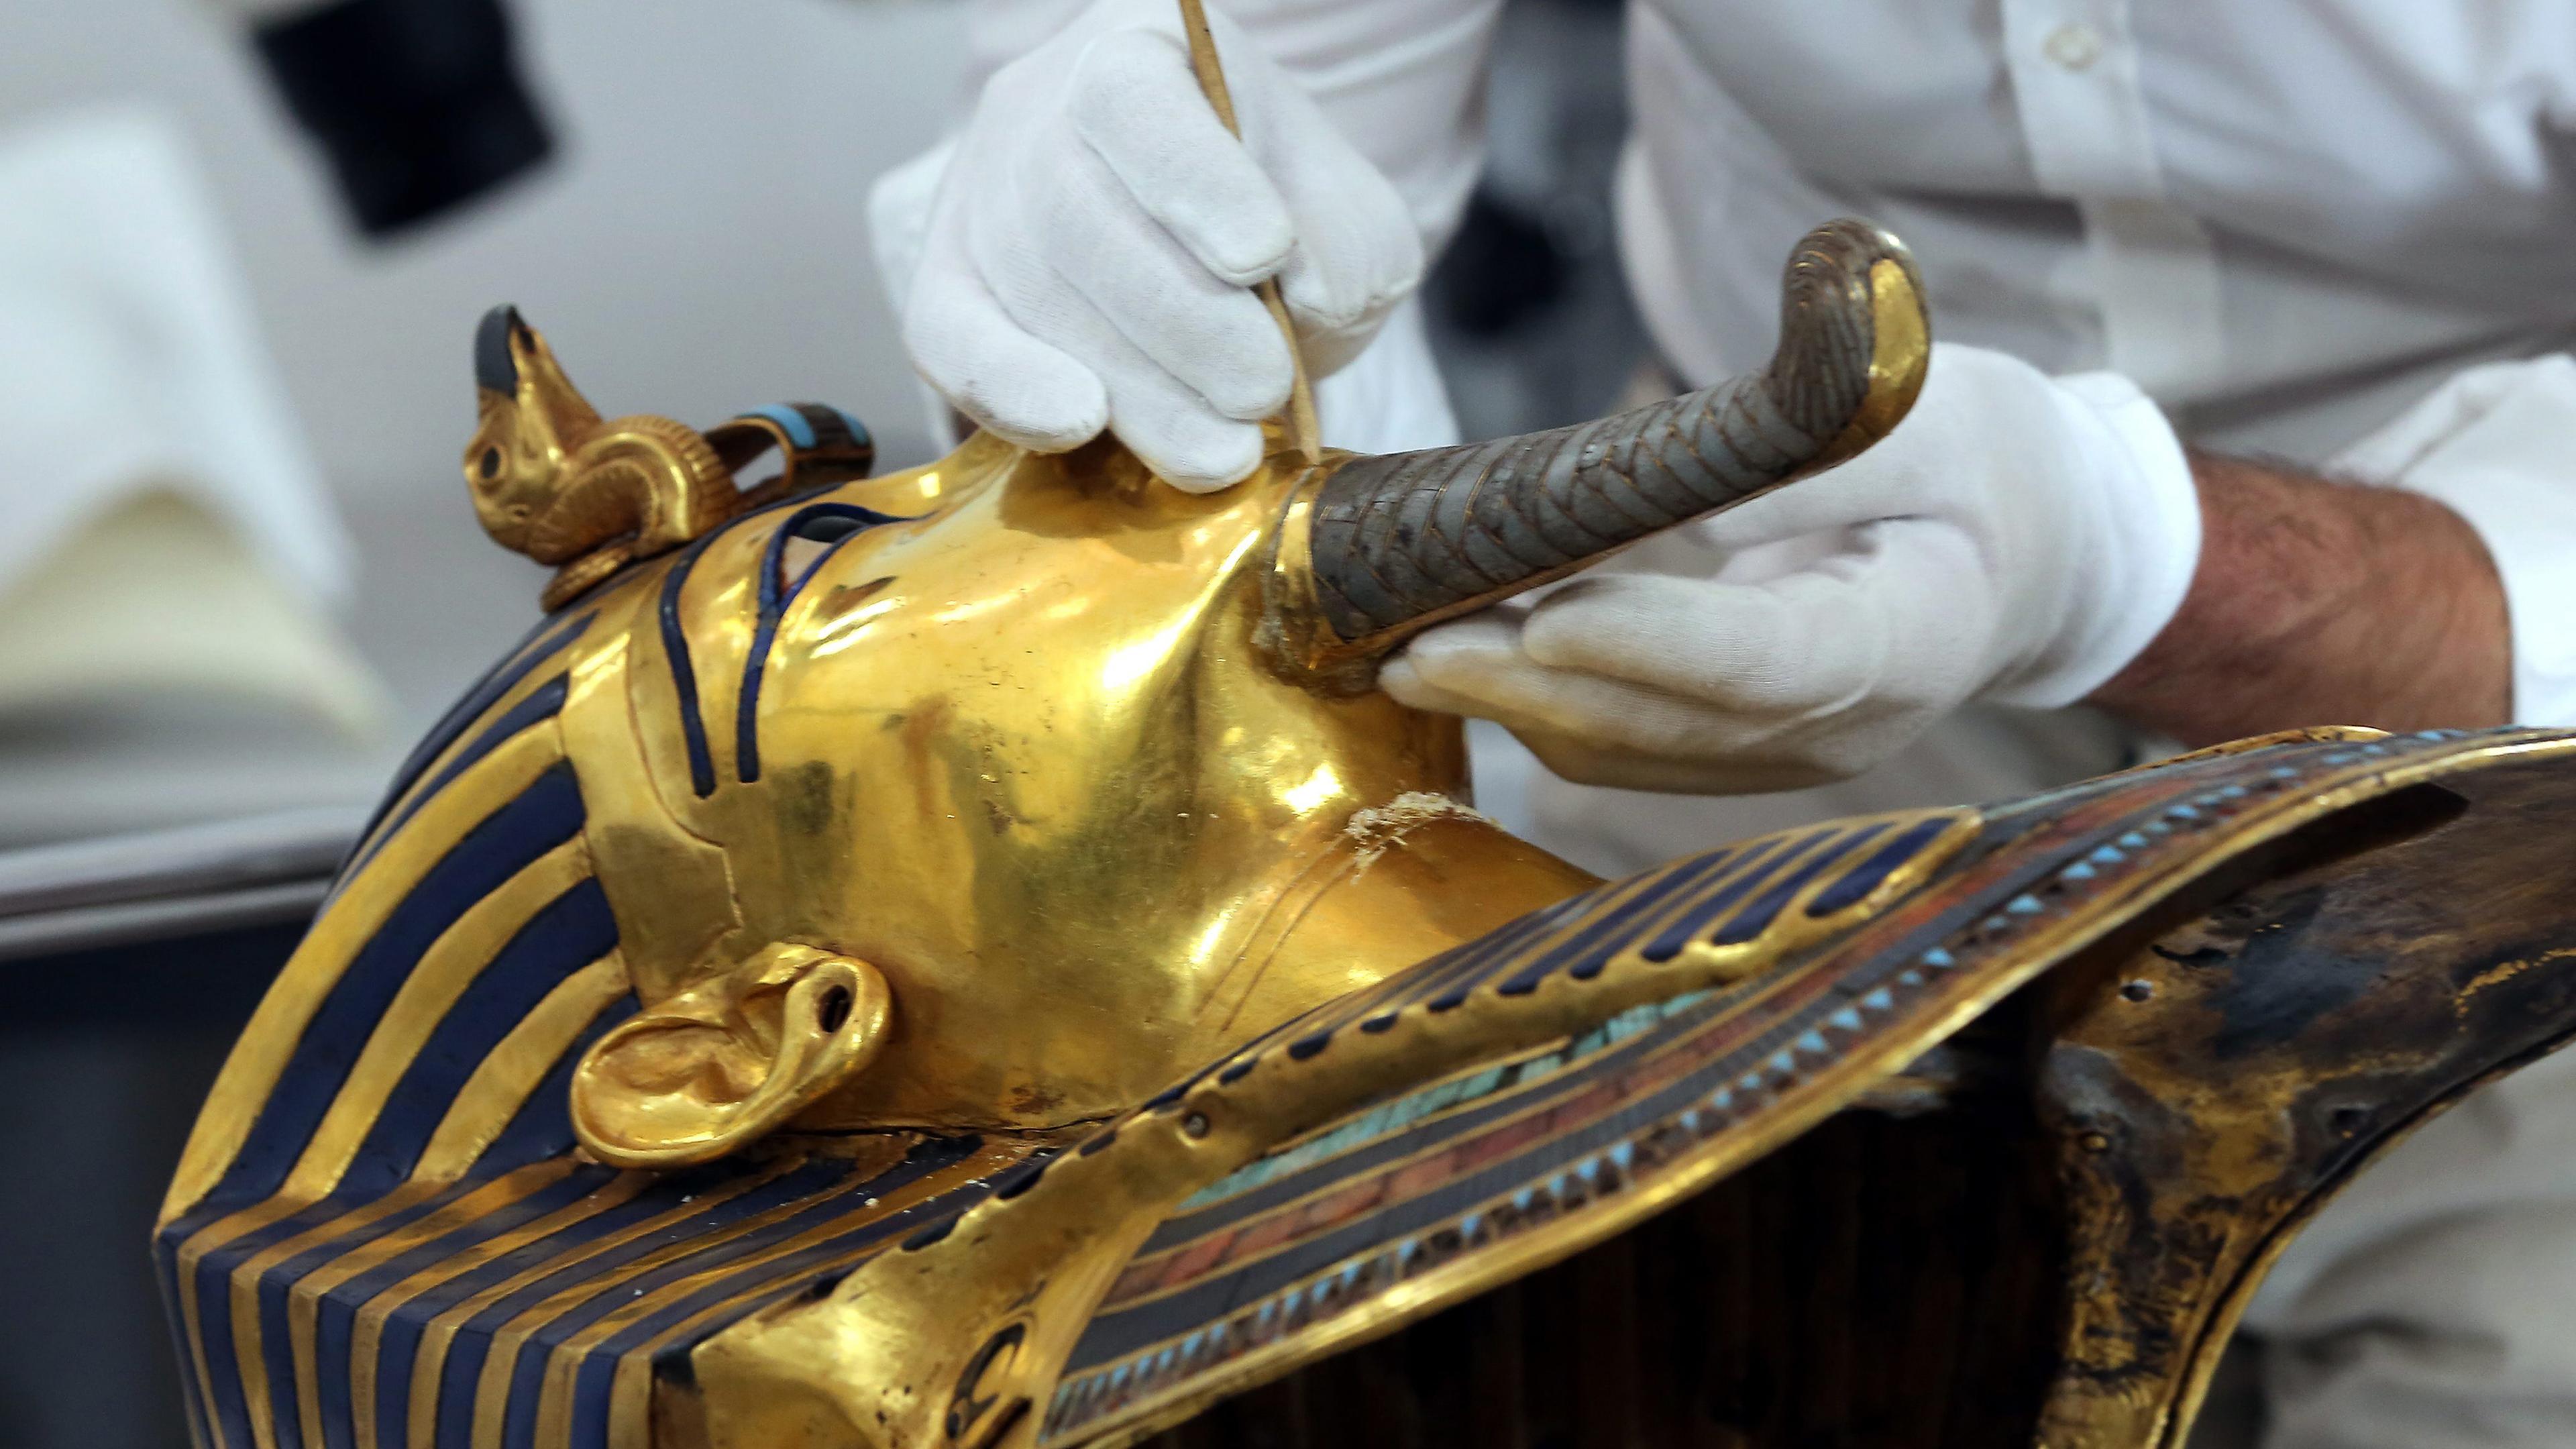 Der deutsche Restaurator Christian Eckmann bei Arbeiten an der goldenen Totenmaske von Pharao Tutanchamun während der Restauration, aufgenommen am 0.10.2015